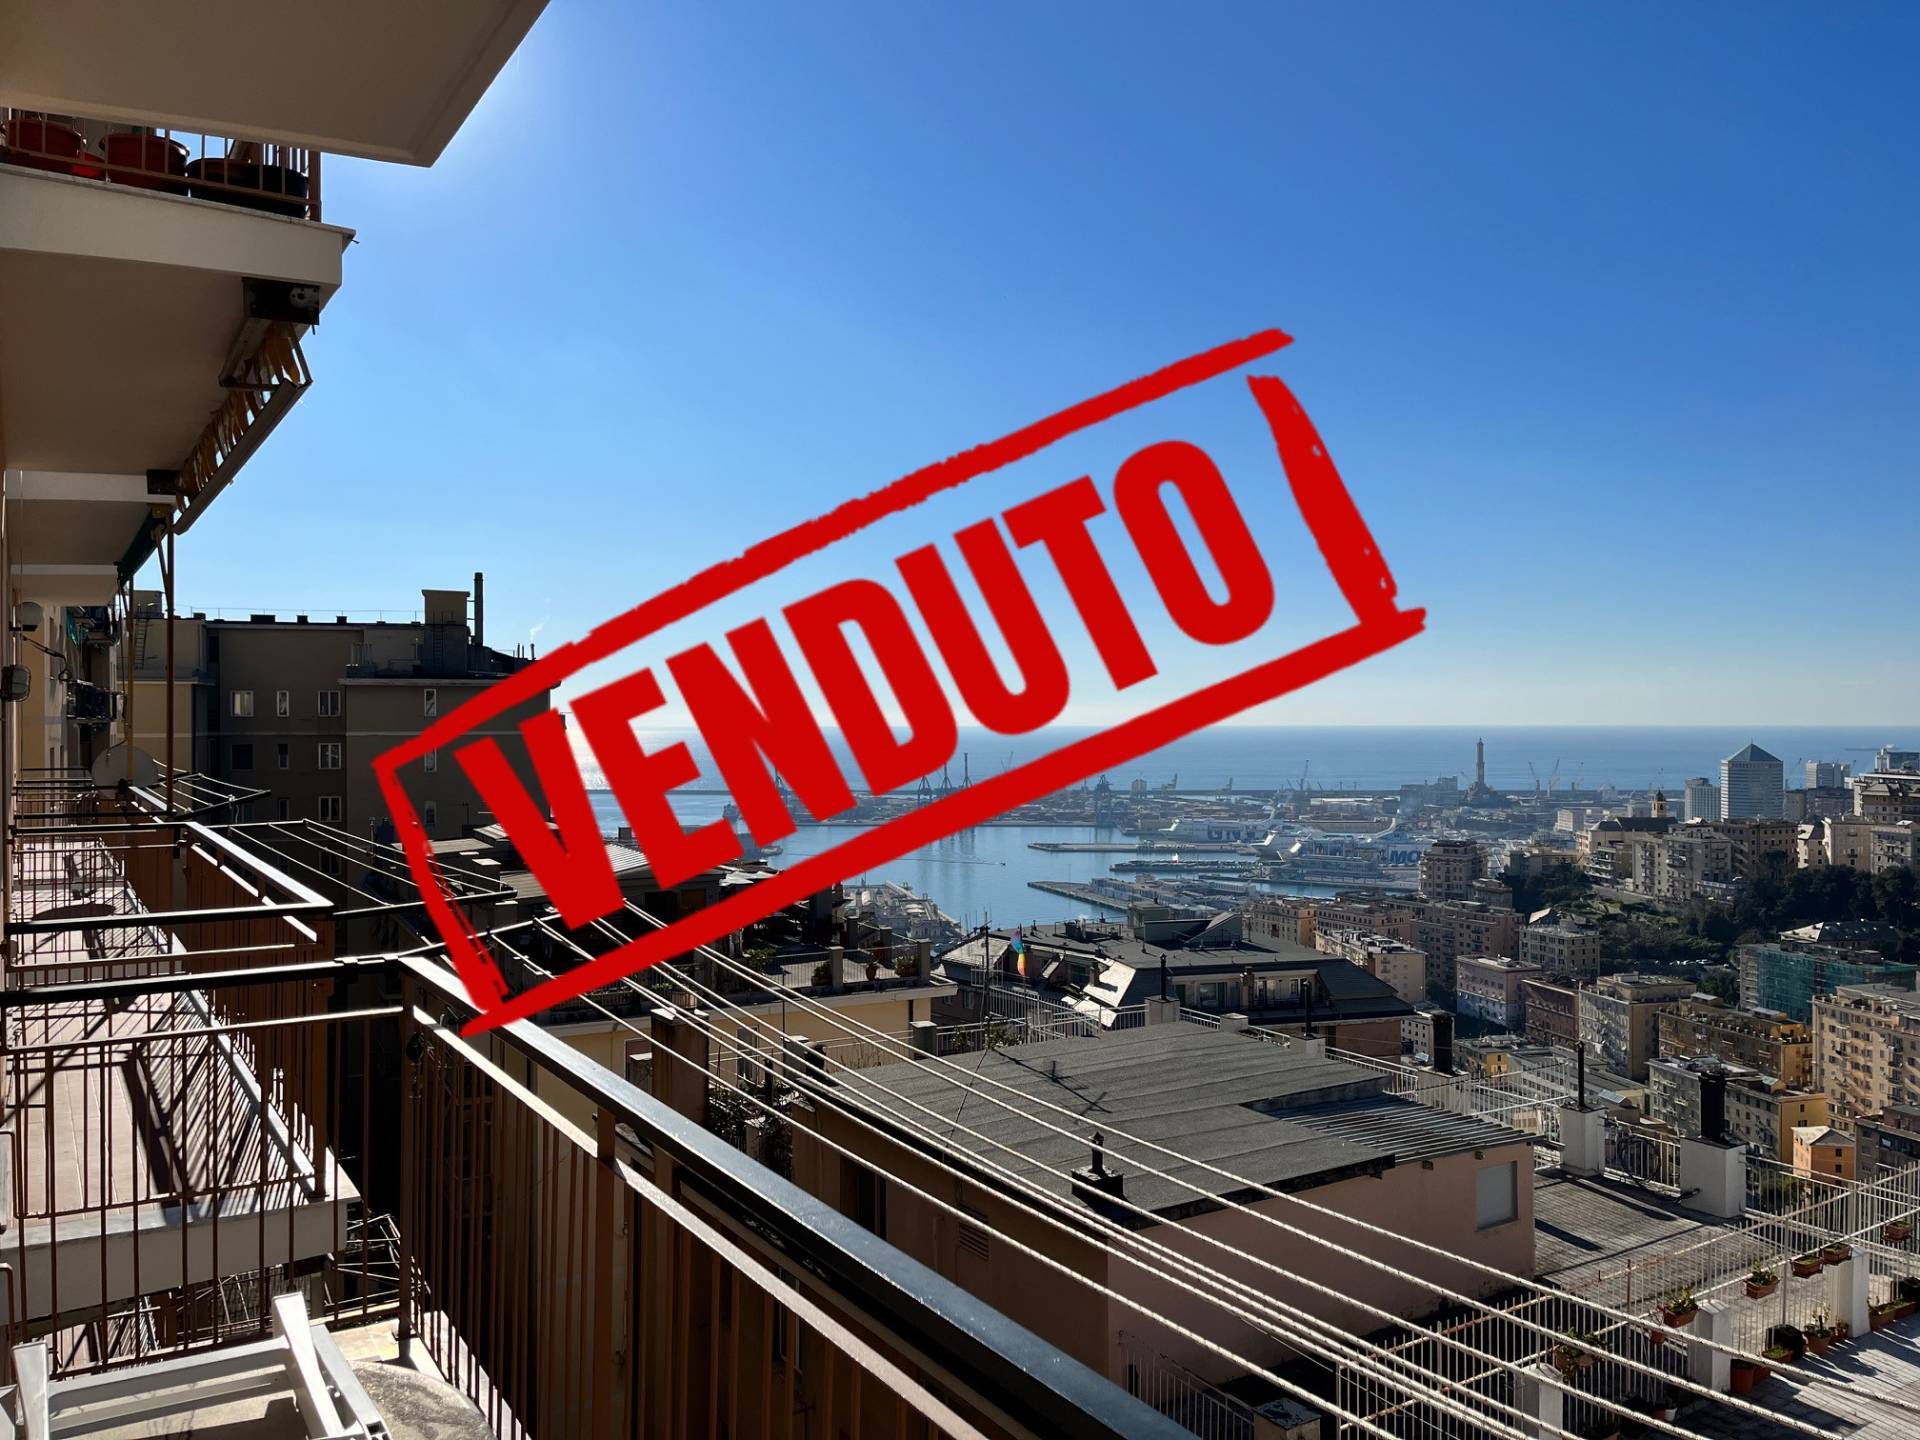 Appartamento vista mare, Genova oregina